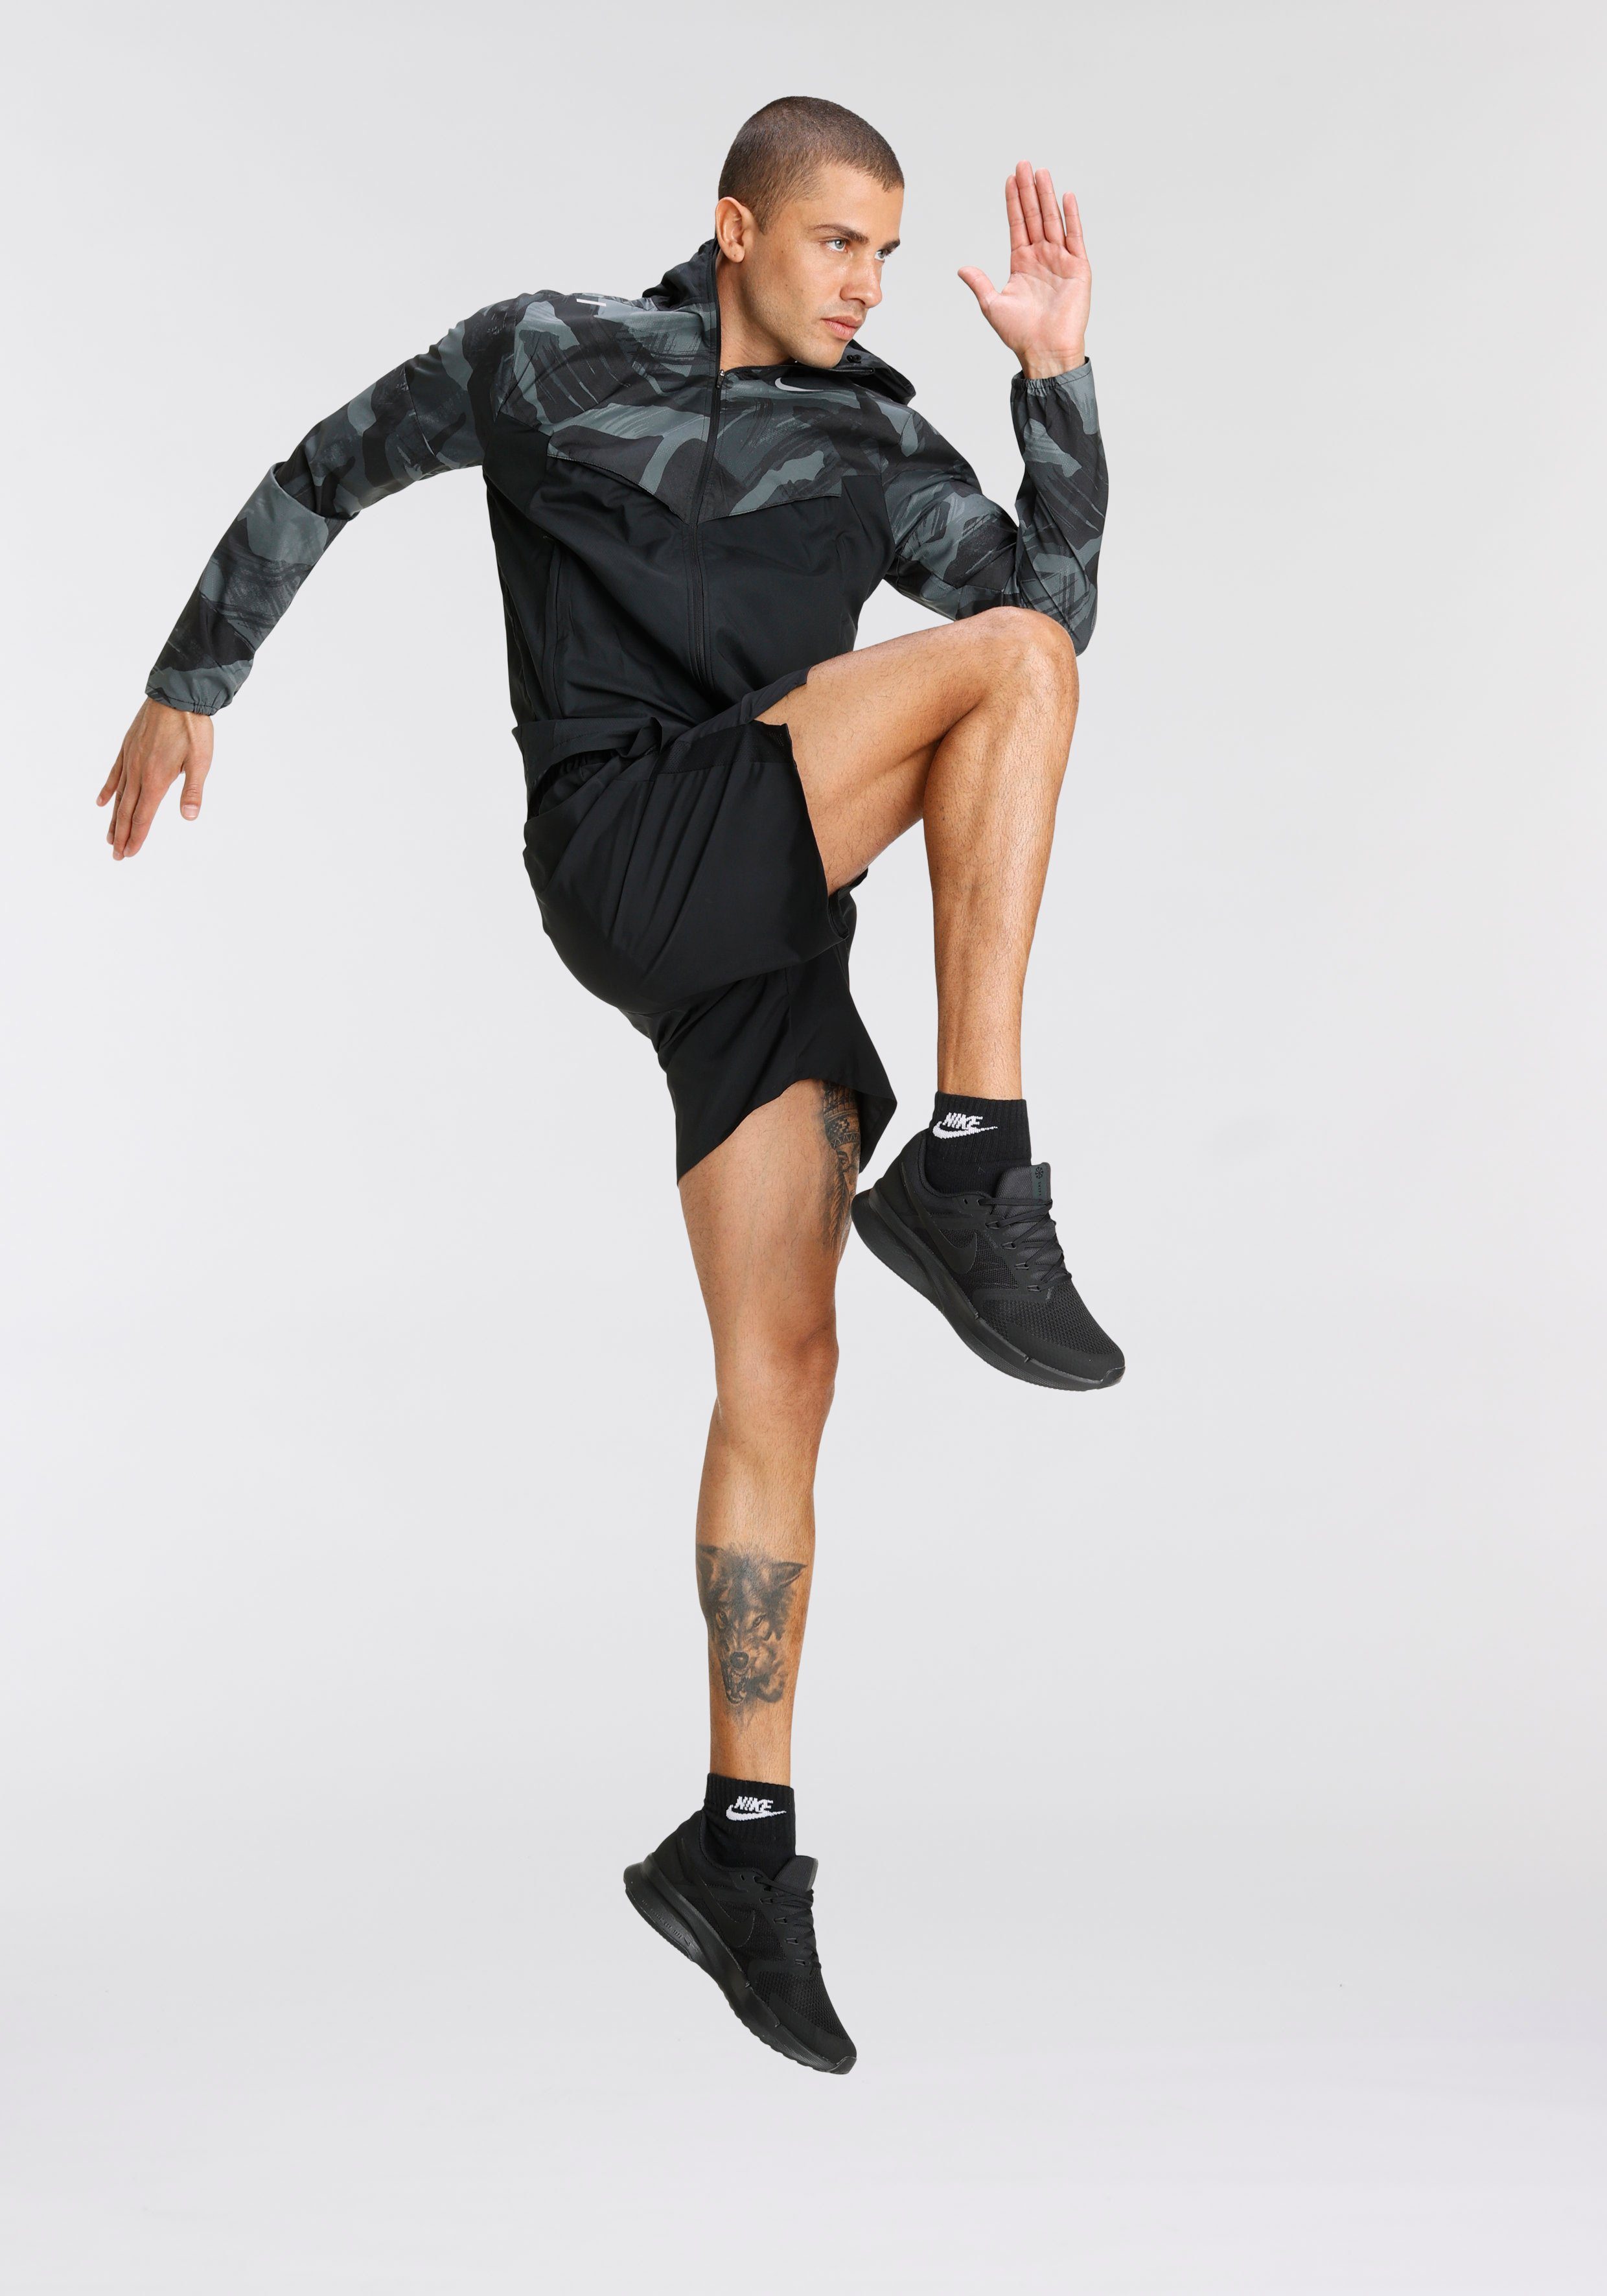 Repel Windrunner Jacket Camo Running Men's Nike Laufjacke